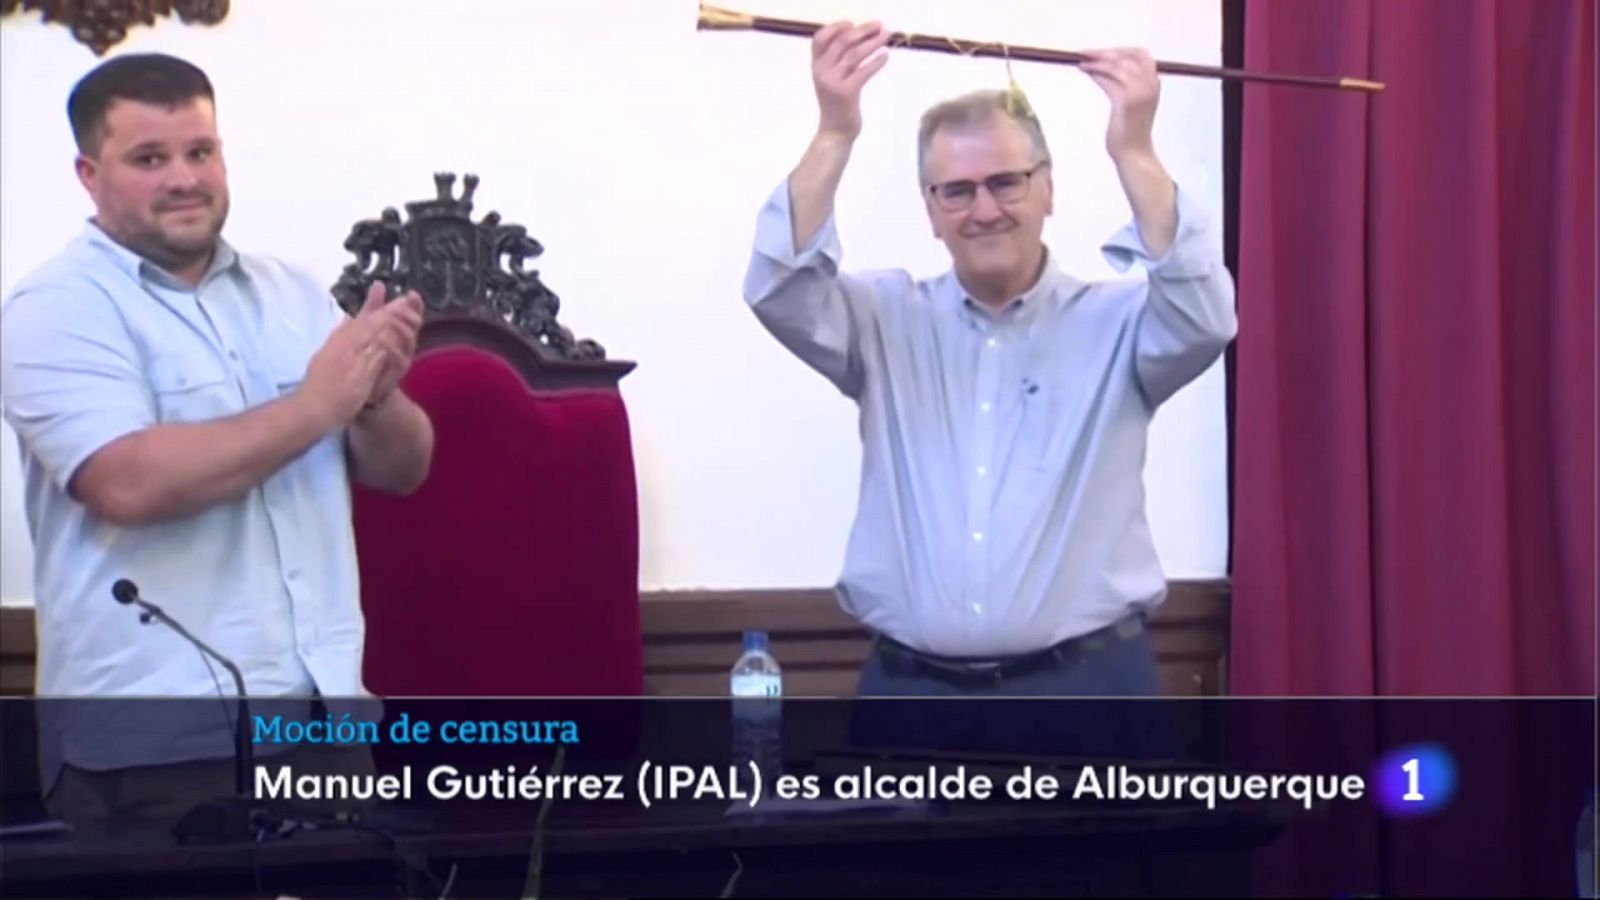 Prospera la moción de censura en Alburquerque con Manuel Gutiérrez como nuevo alcalde - RTVE.es